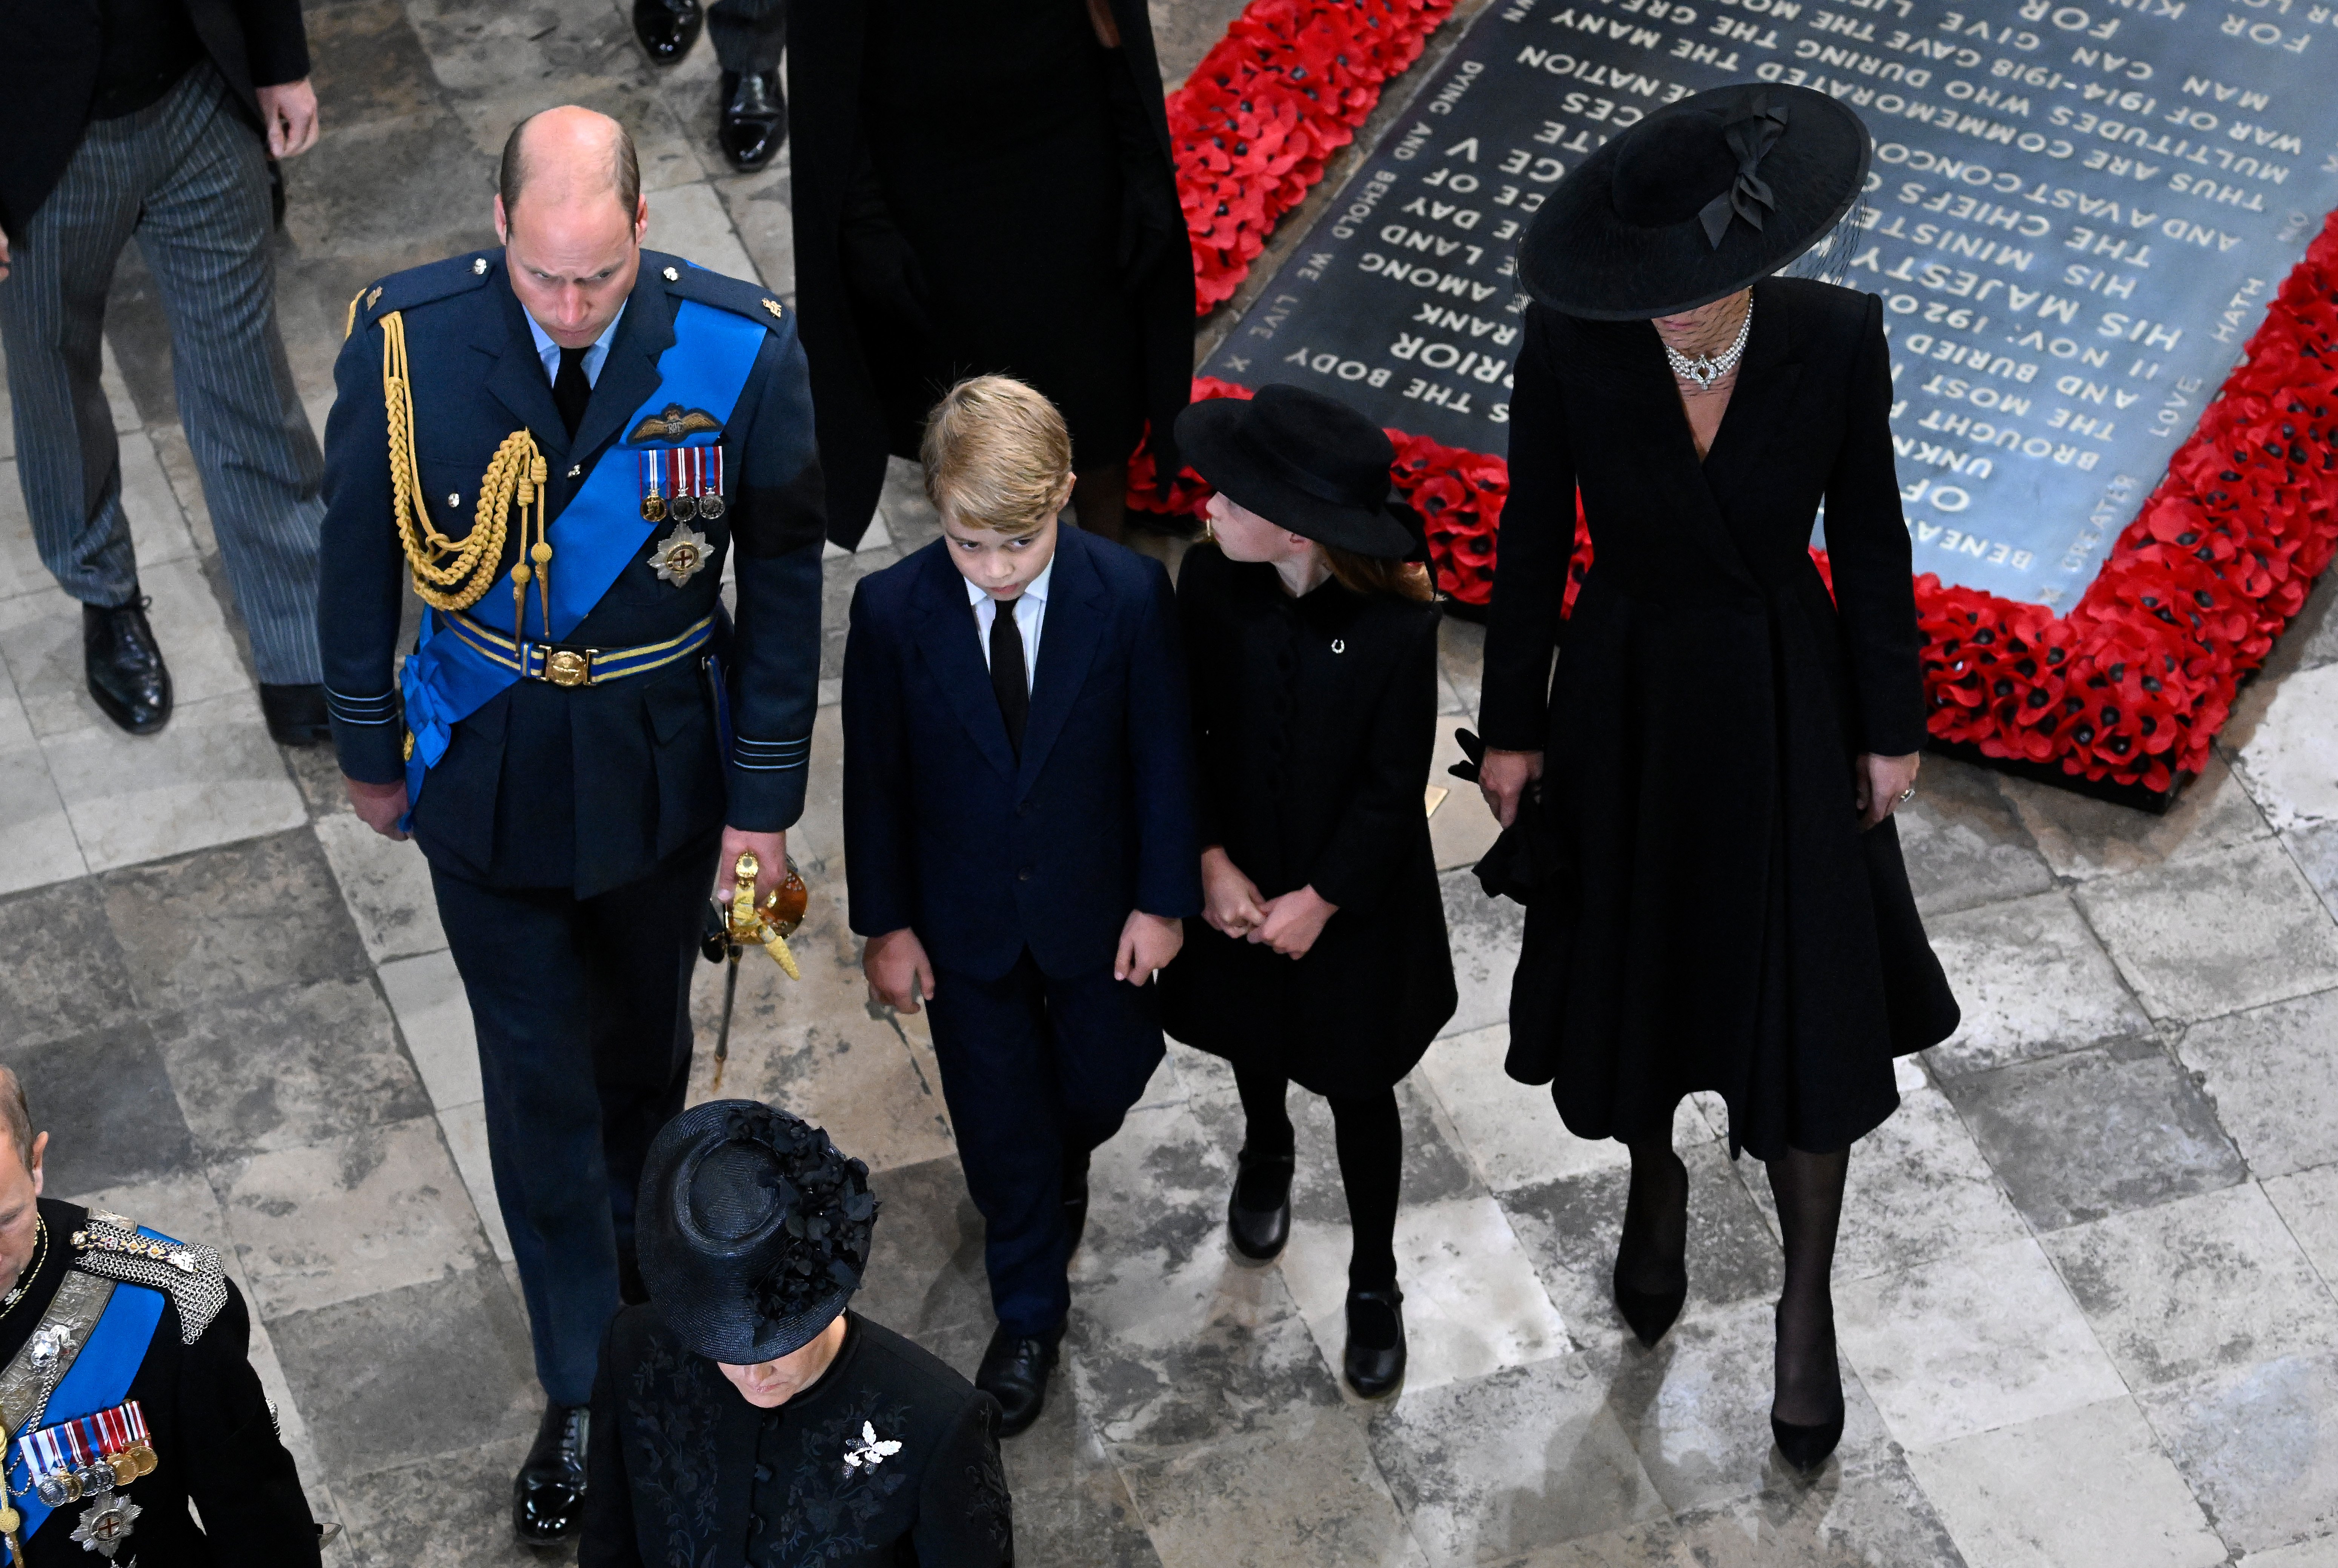 El príncipe William, el príncipe George, la princesa Charlotte y la princesa Kate salen de la Abadía de Westminster durante el funeral de estado de la reina Elizabeth II el 19 de septiembre de 2022 en Londres, Inglaterra | Foto: Getty Images